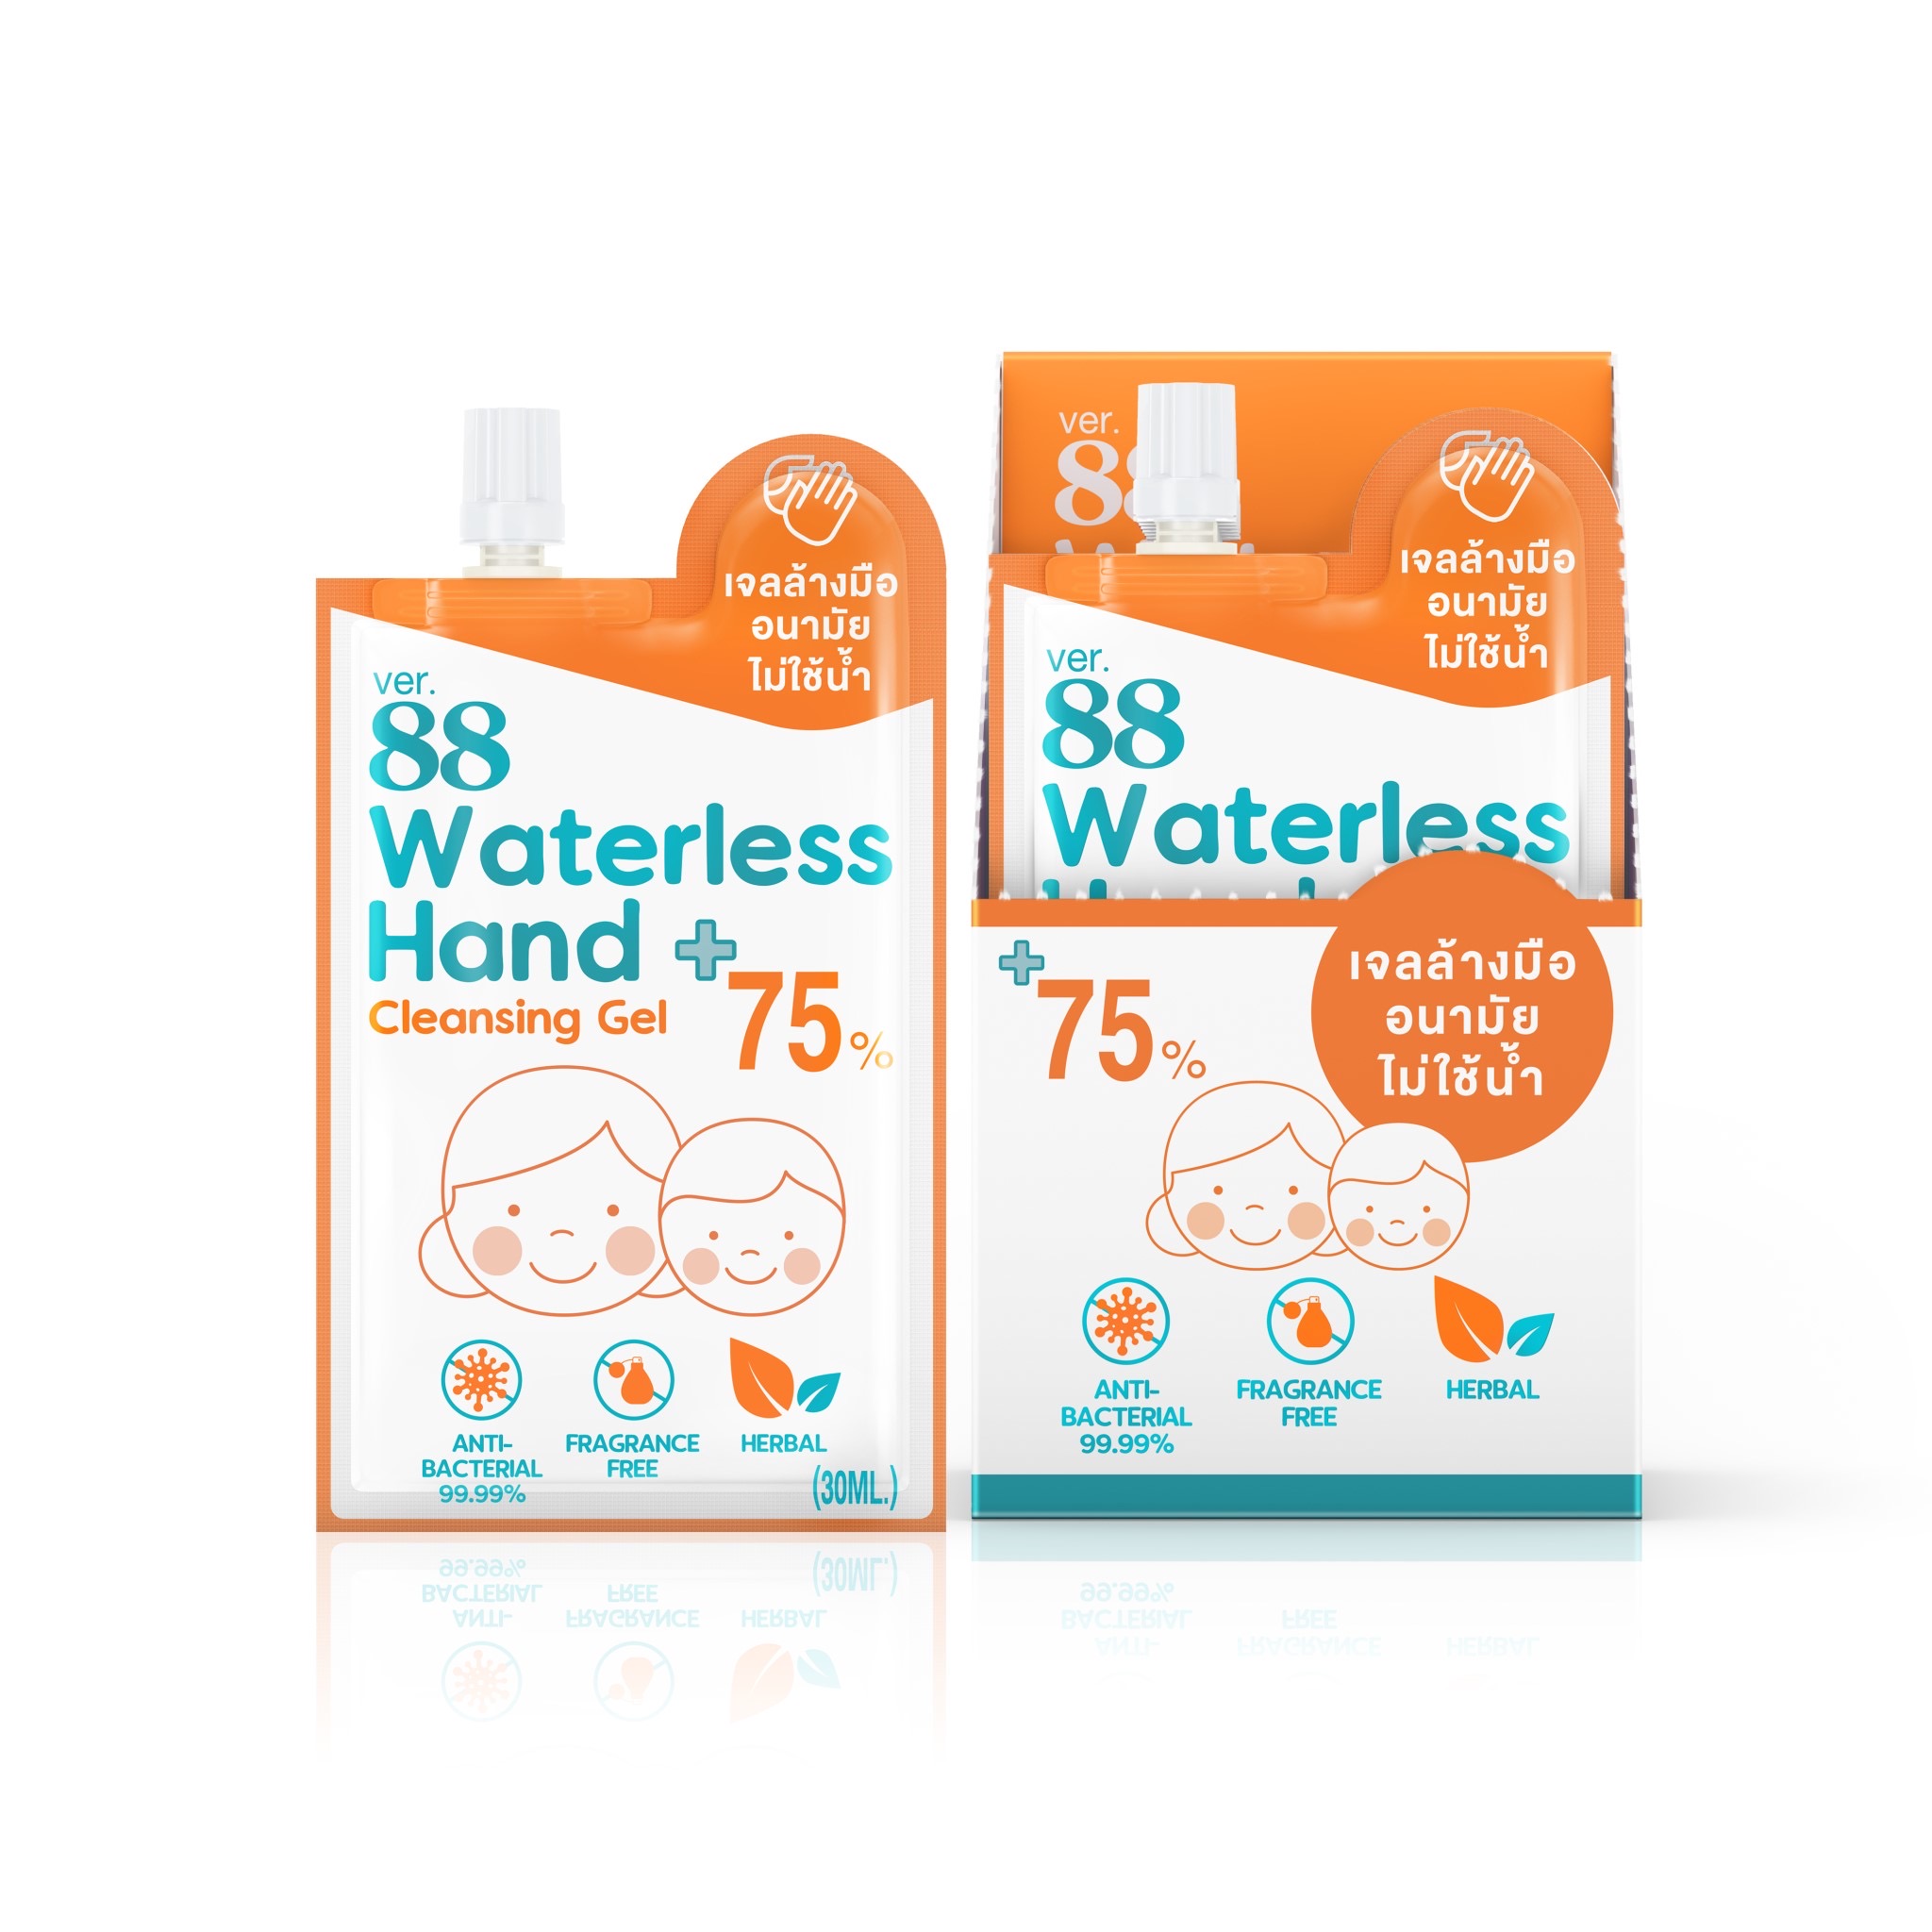 Waterleee Hand Cleaning เจล ล้างมือแบบซอง  ยับยั้งแบททีเรีe ( 1 กล่อง )